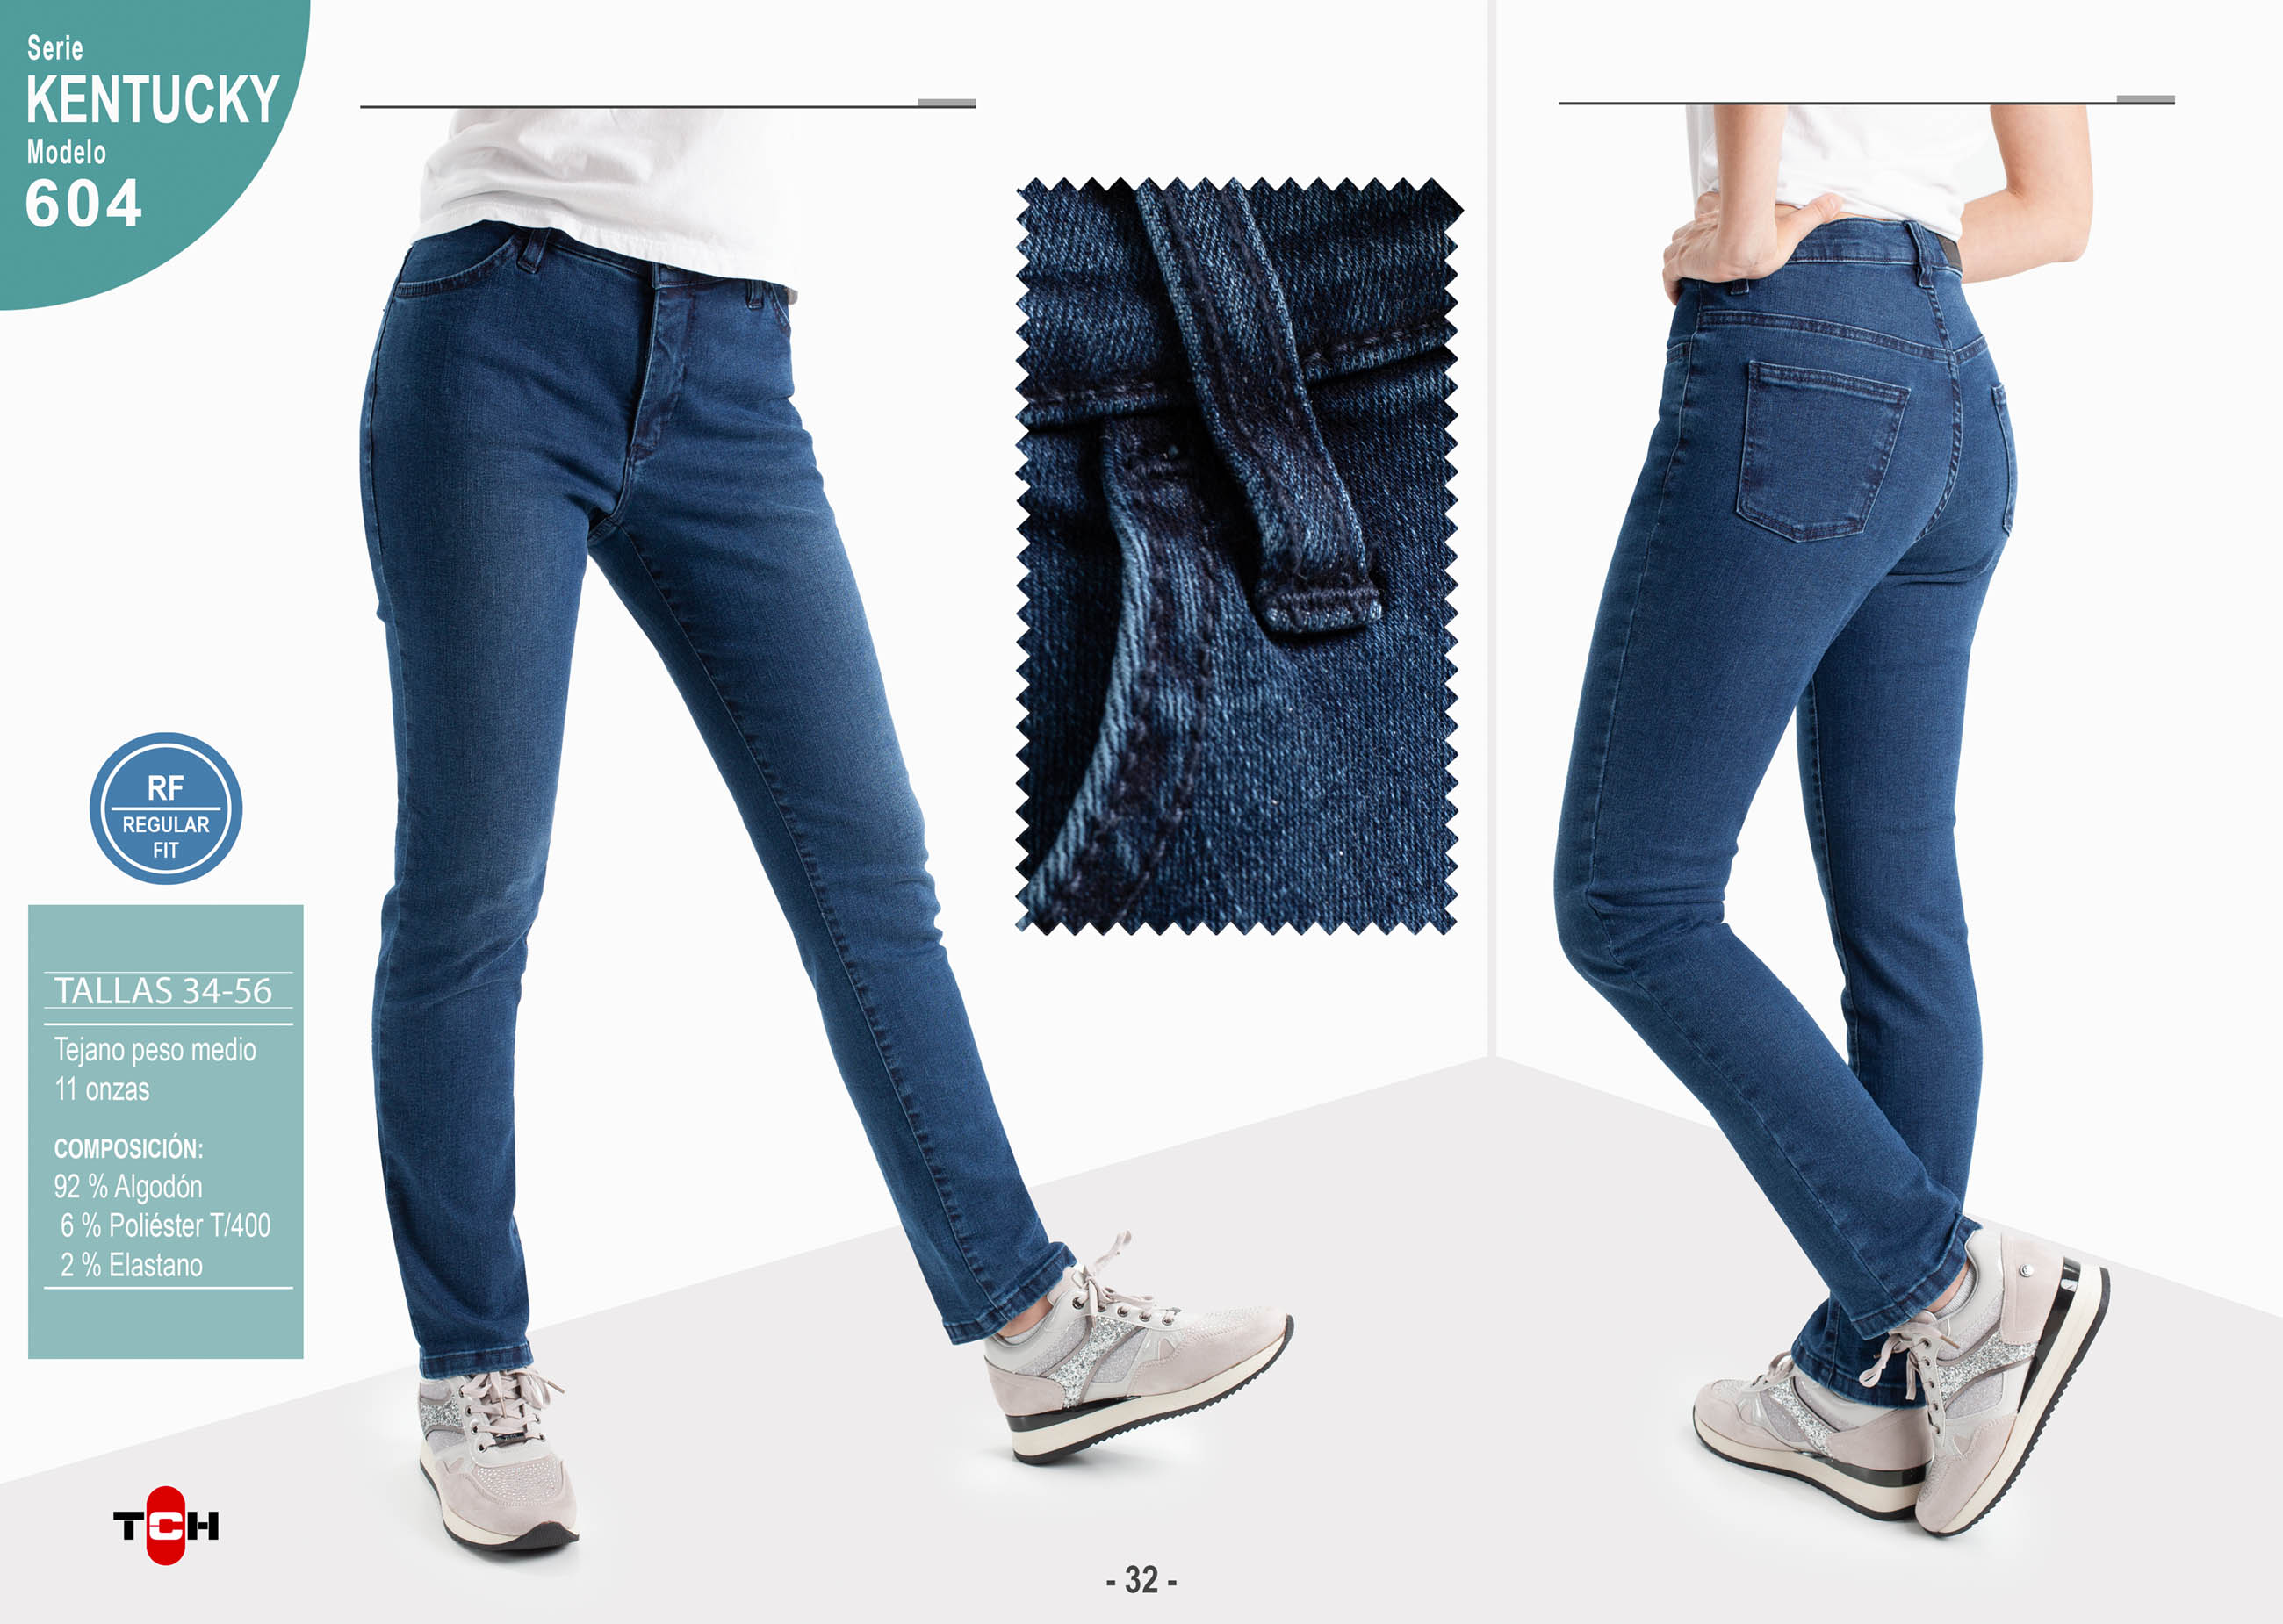 Pantalón vaquero TCH Jeans elástico ajustado de mujer fabricado en tejido denim oscuro de algodón con Lycra.